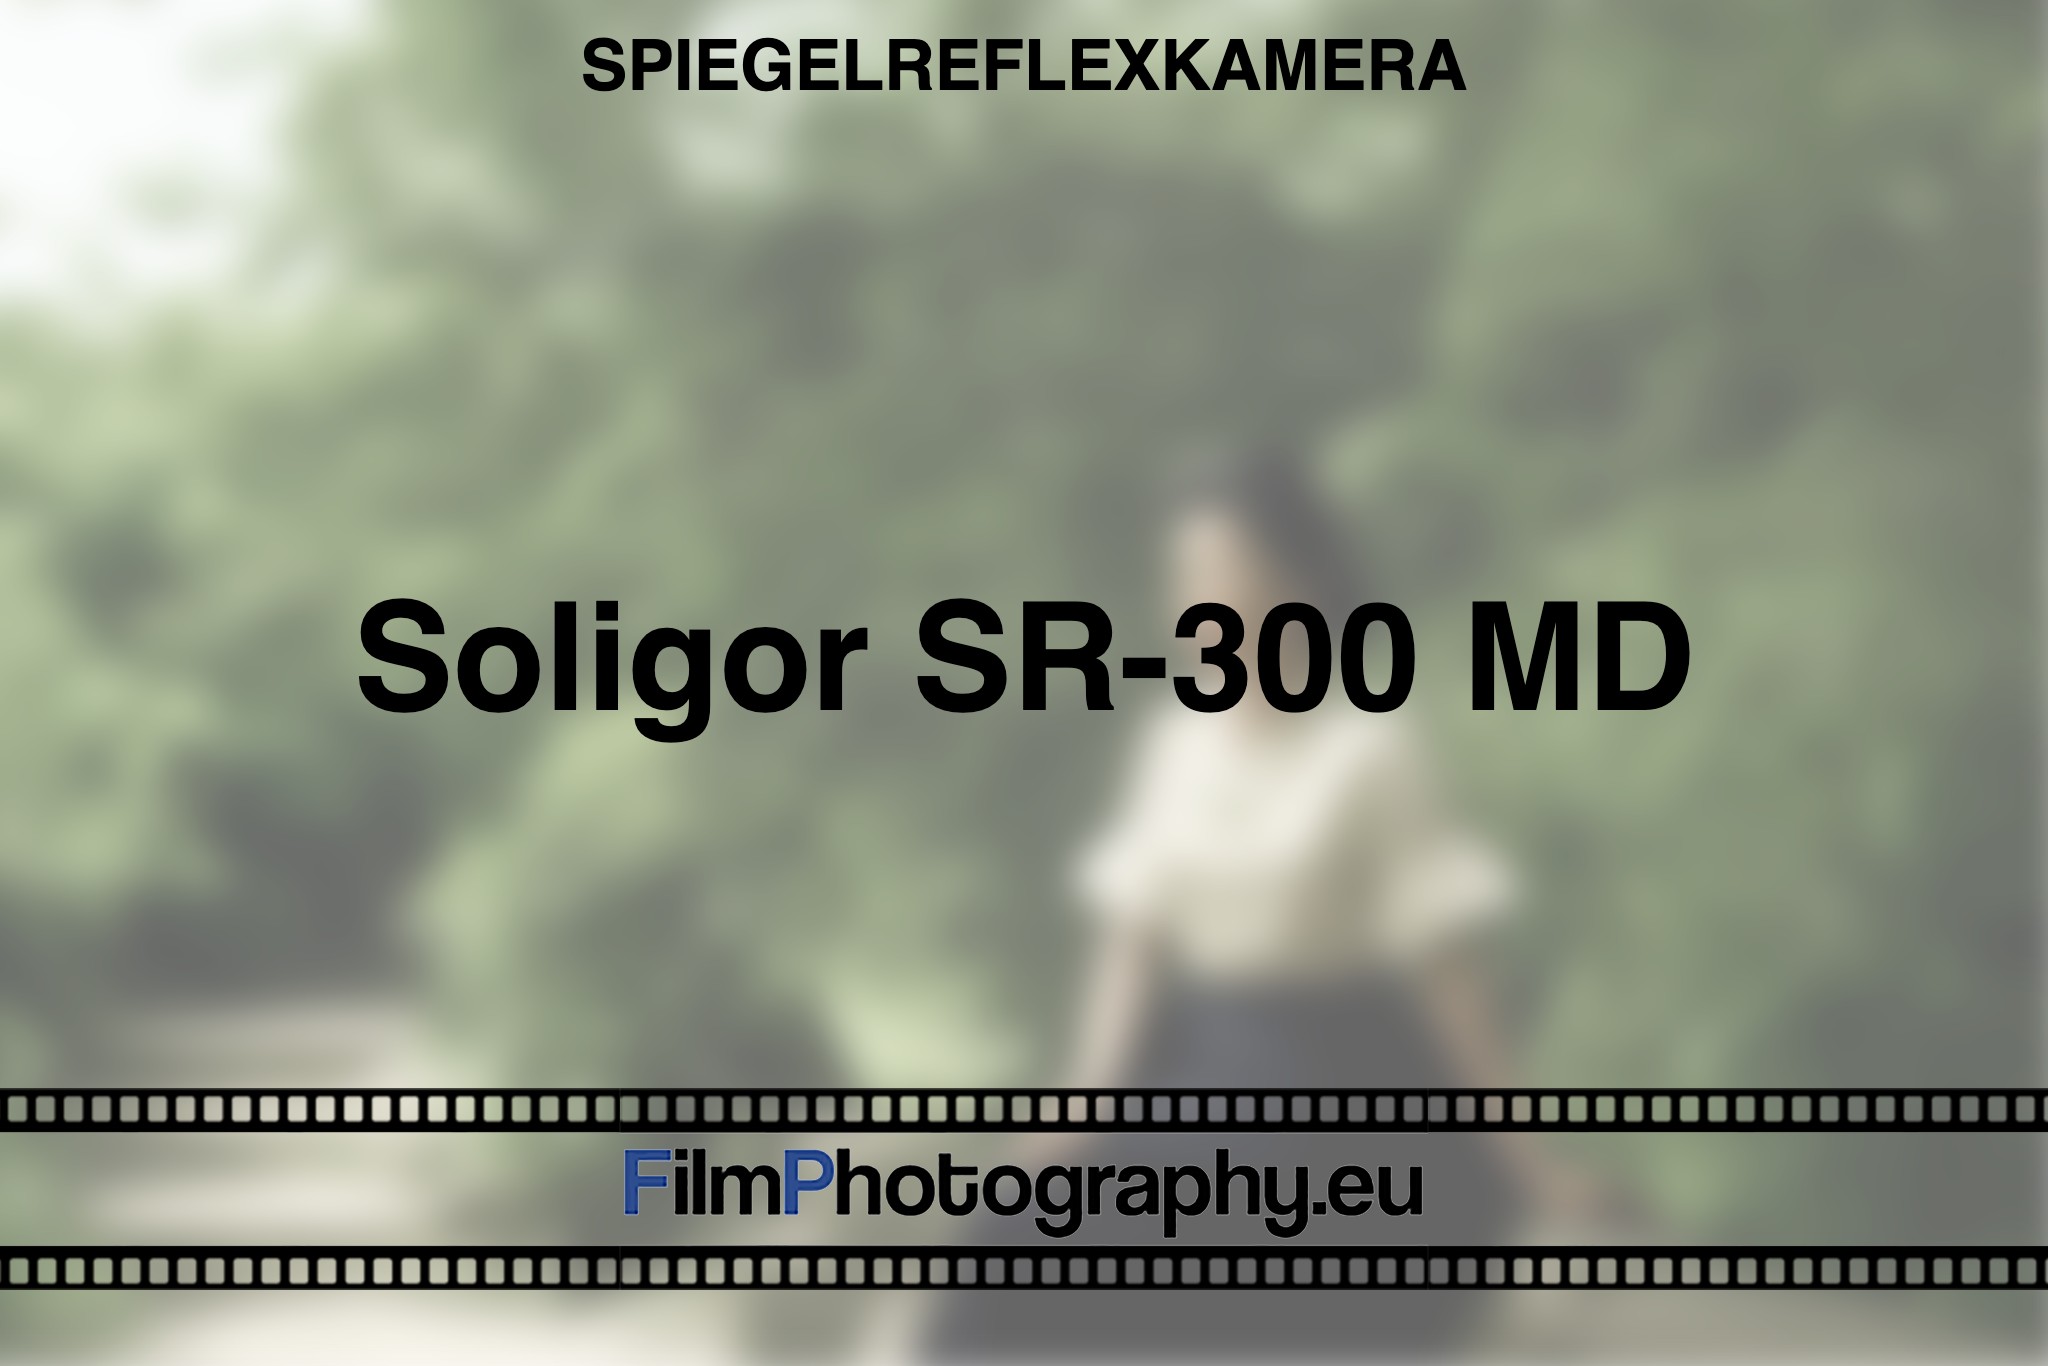 soligor-sr-300-md-spiegelreflexkamera-bnv